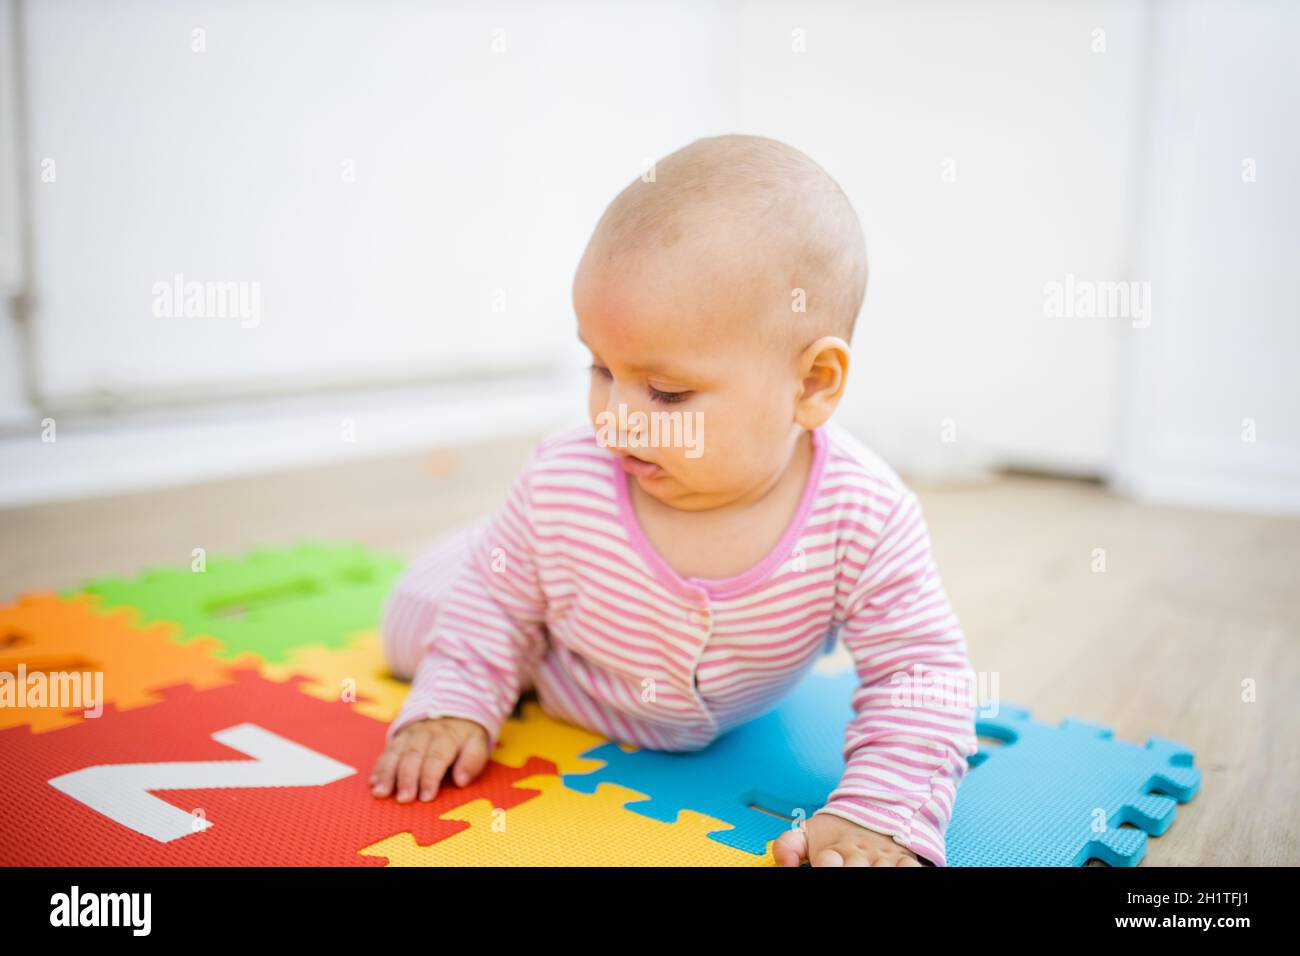 Liebenswert Baby liegt mit dem Gesicht nach unten auf bunten Kinder Matte mit Buchstaben. Porträt von abgelenkt aussehenden Baby auf dem Boden spielen. Glückliche Babys, die Spaß haben Stockfoto